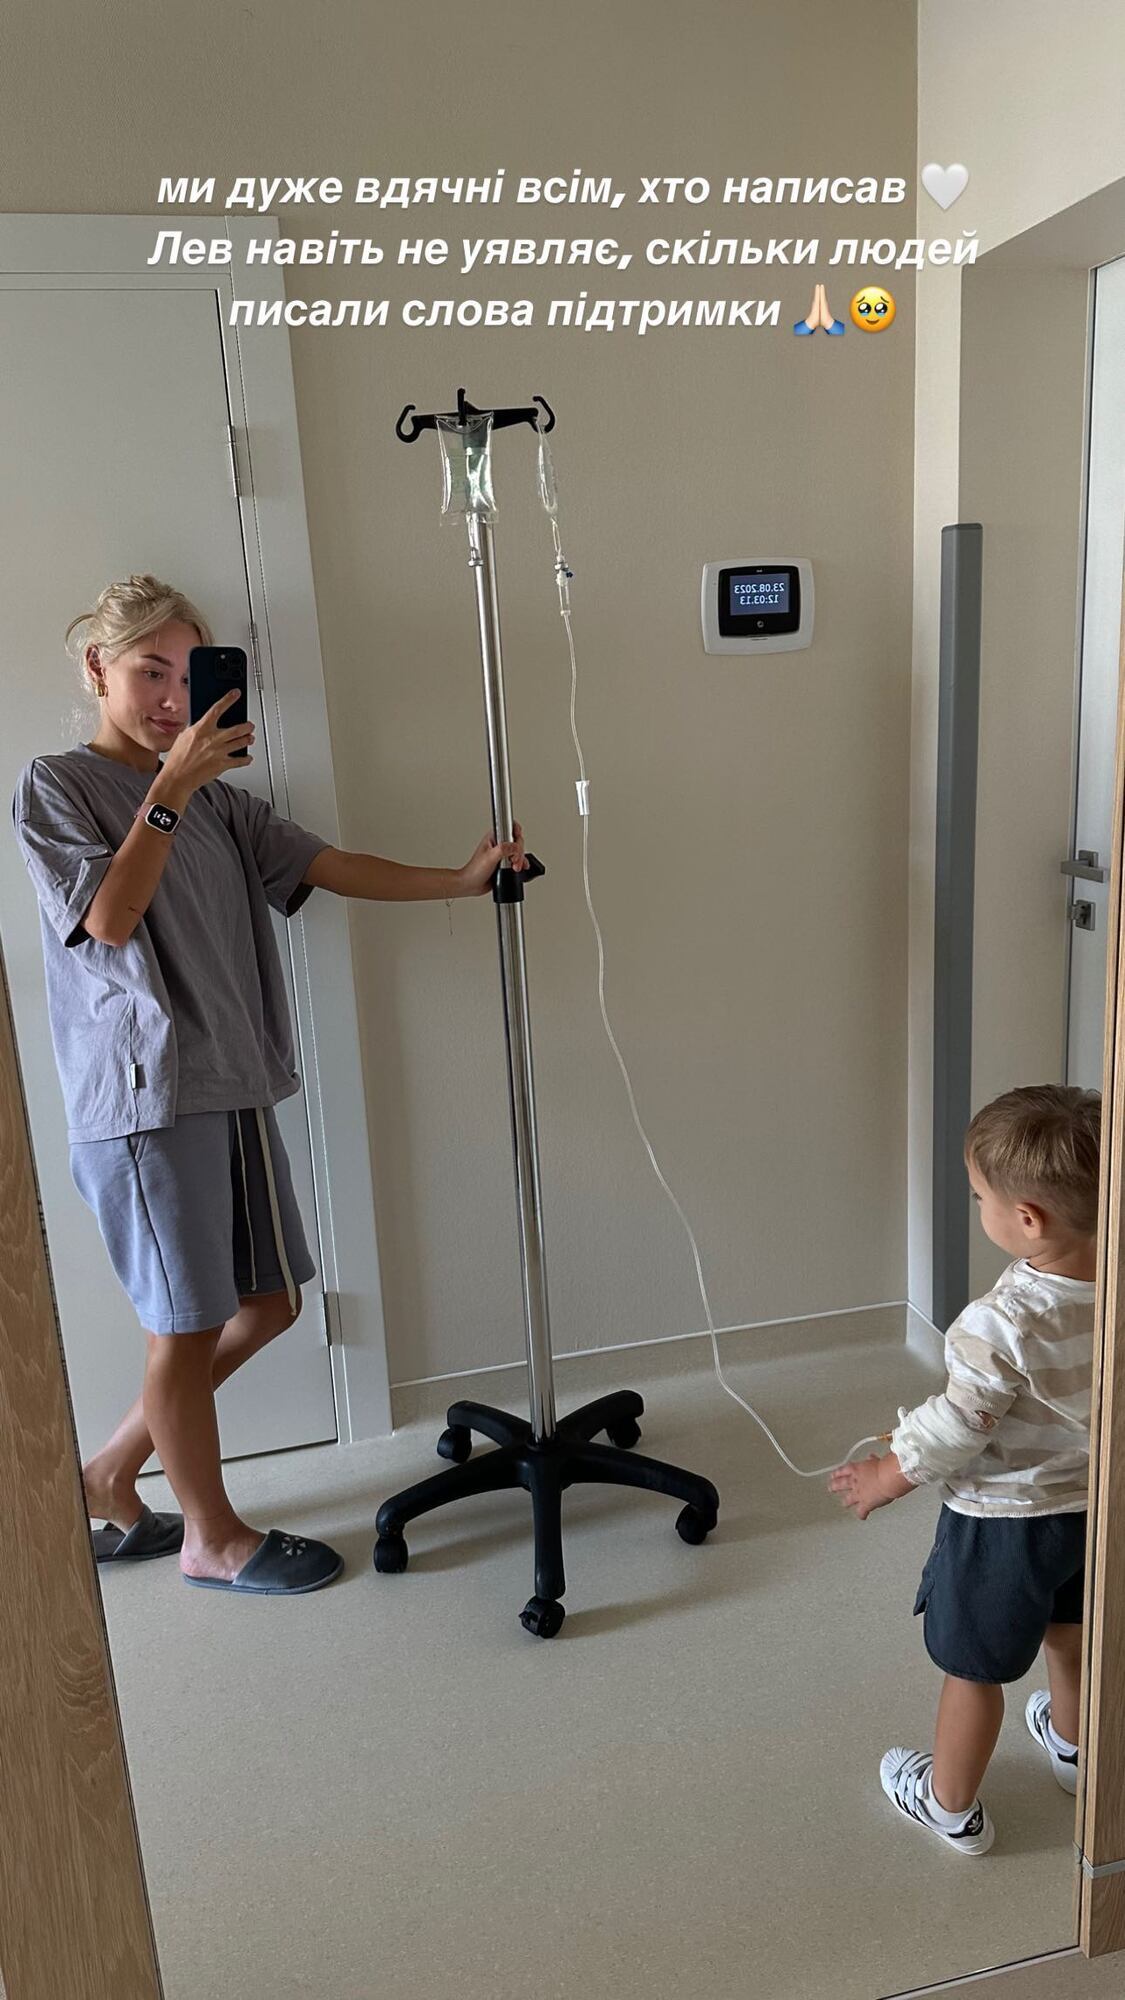 "В слезах сползла по стене": Квиткова раскрыла болезнь сына и показала фото из больницы